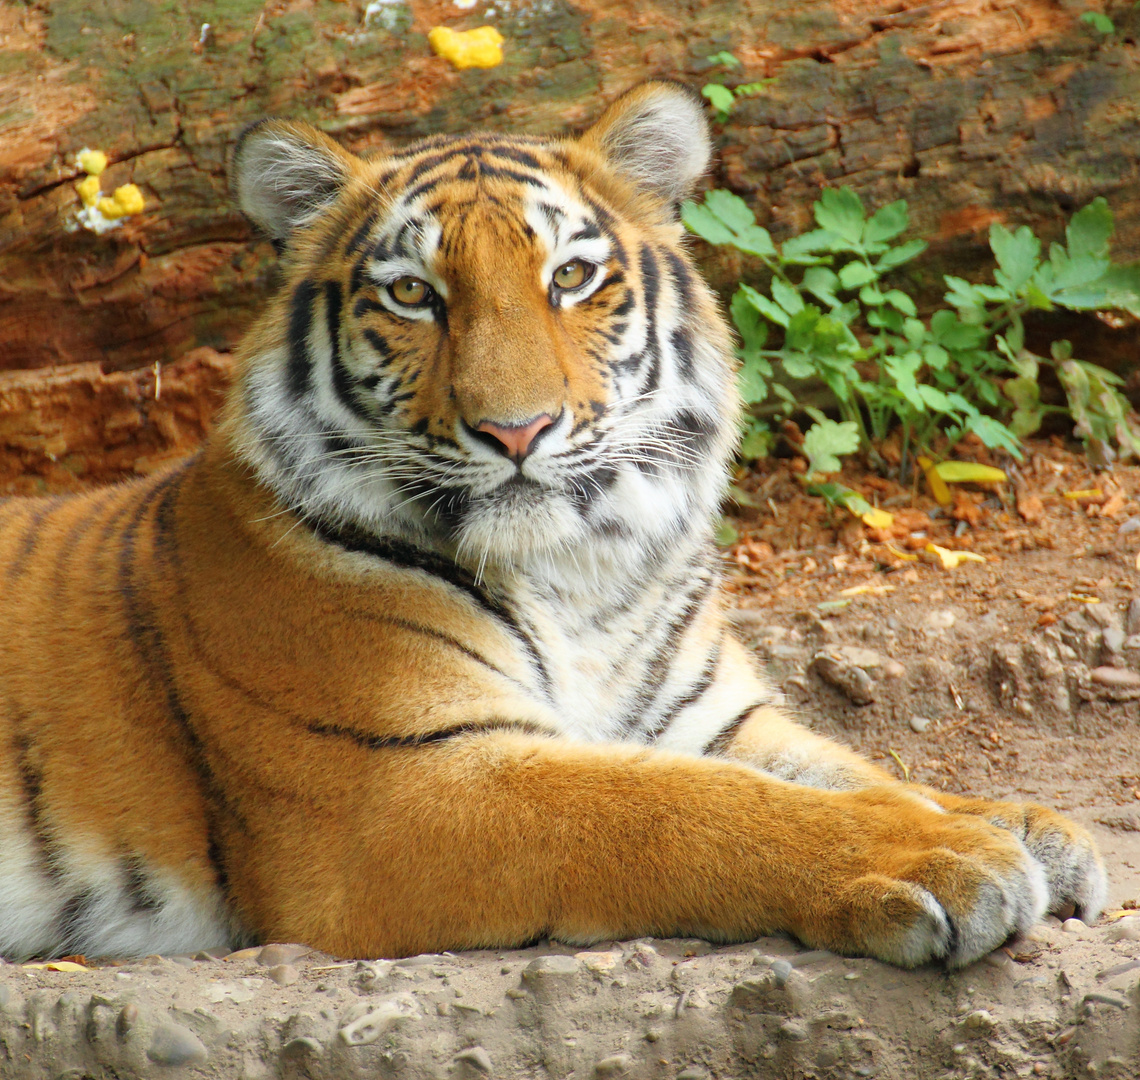 Tiger 1 (Duisburger Zoo)